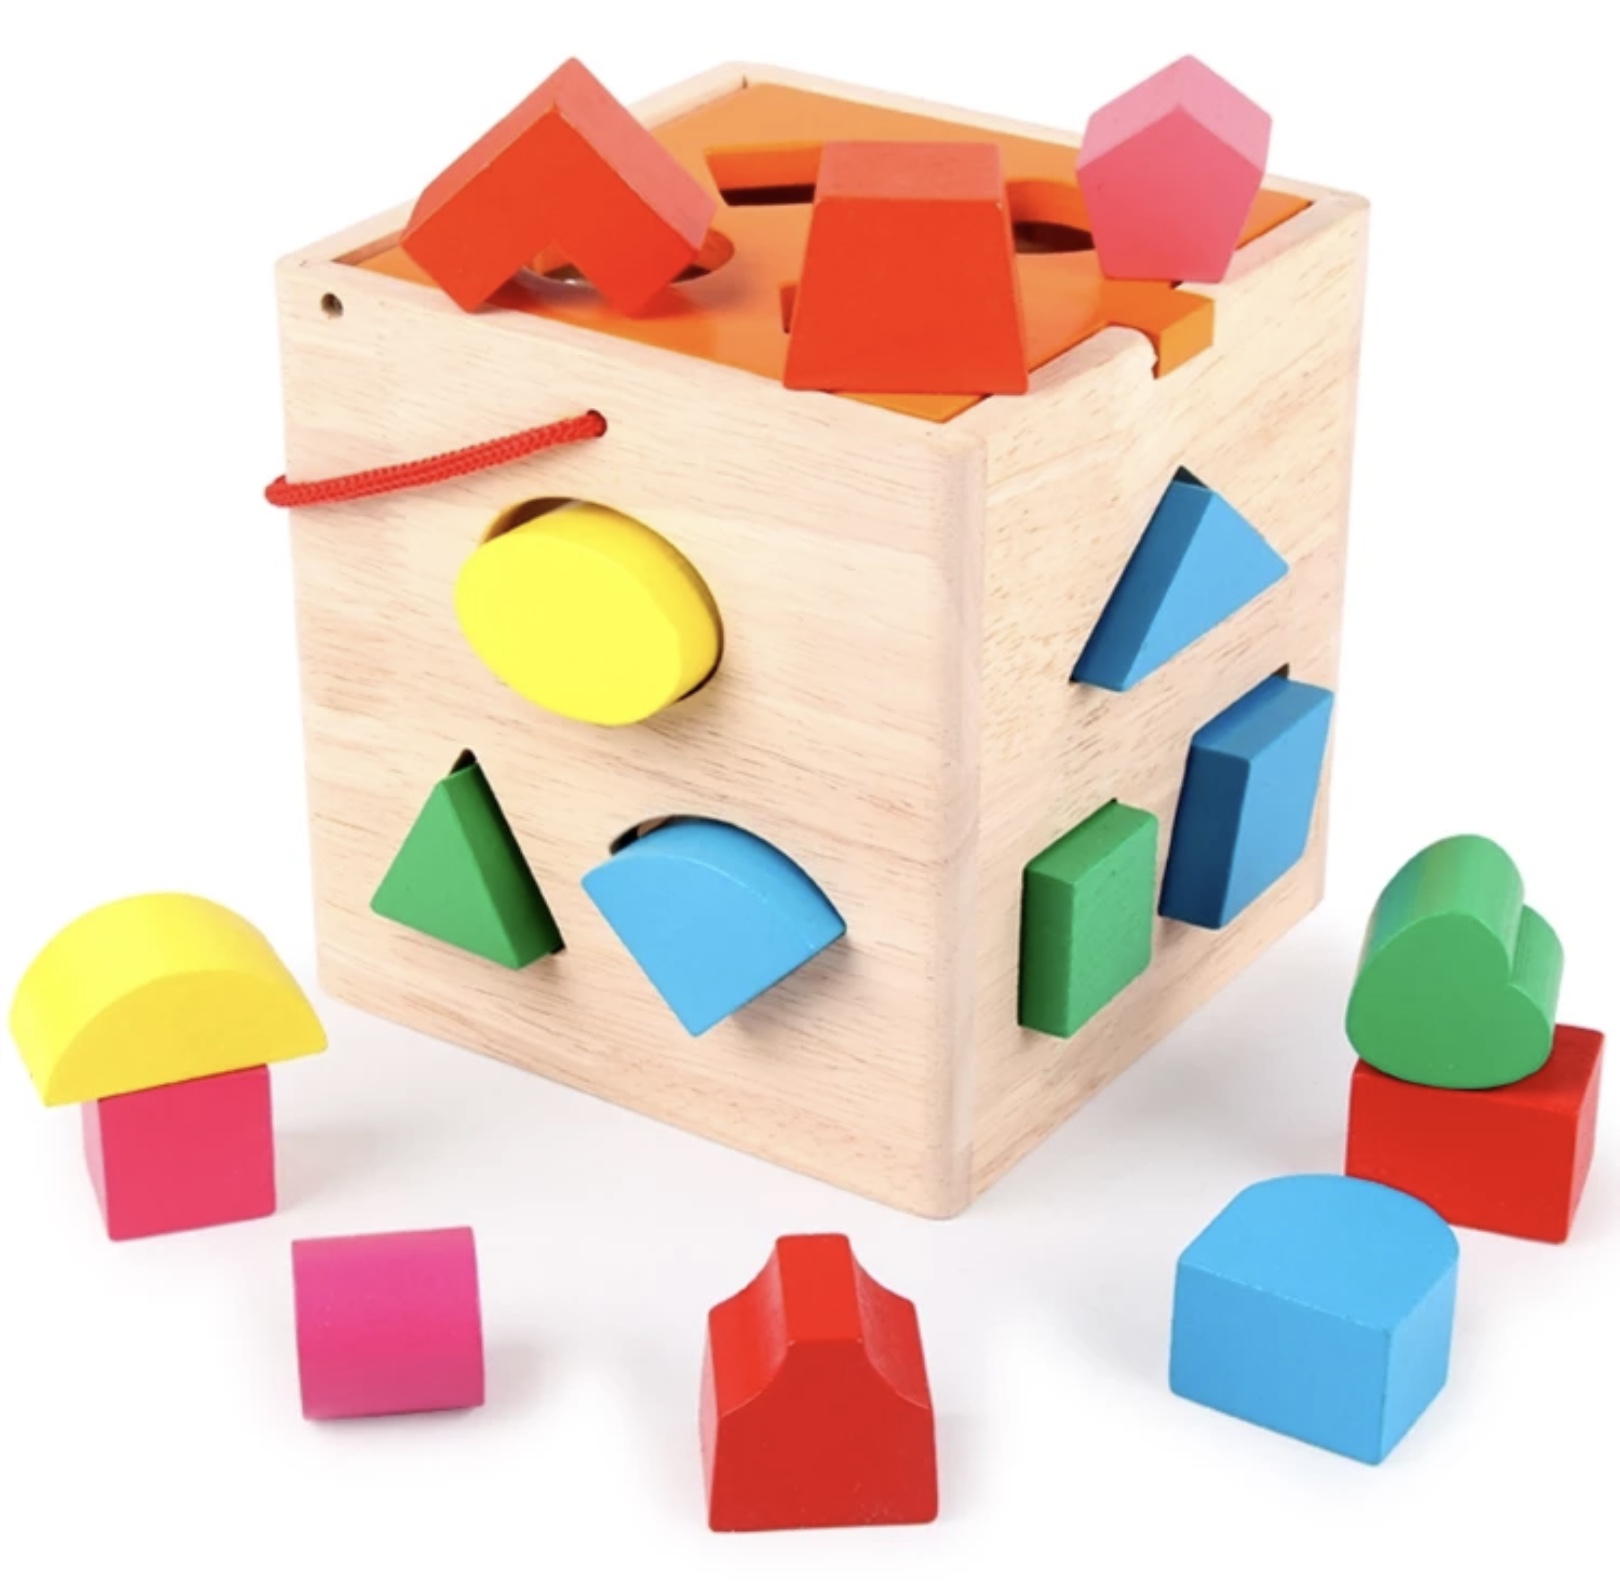 Cub sortator din lemn cu diverse forme geometrice învață formele și culorile în același timp în momentul în care cei mici forma corectă jucăria îți plătește cu un clichet și cad in cutia din lemn